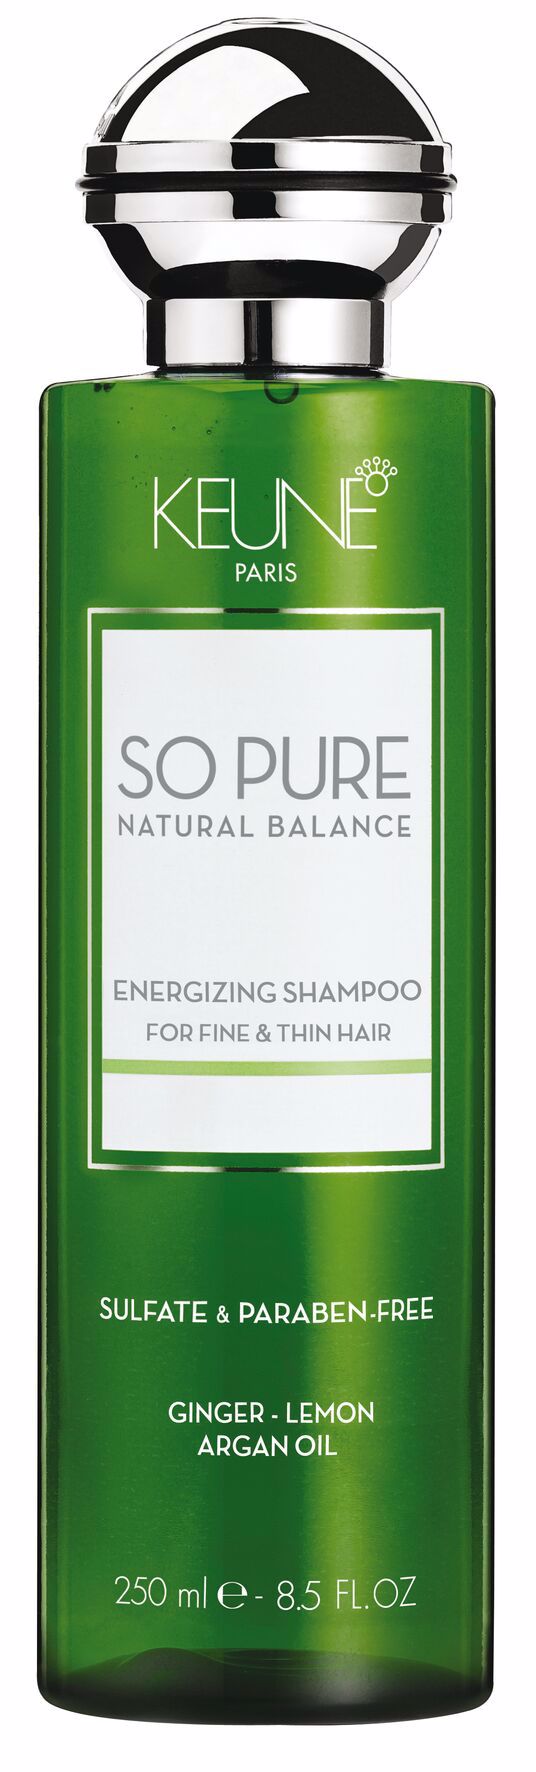 SP Energizing Shampoo